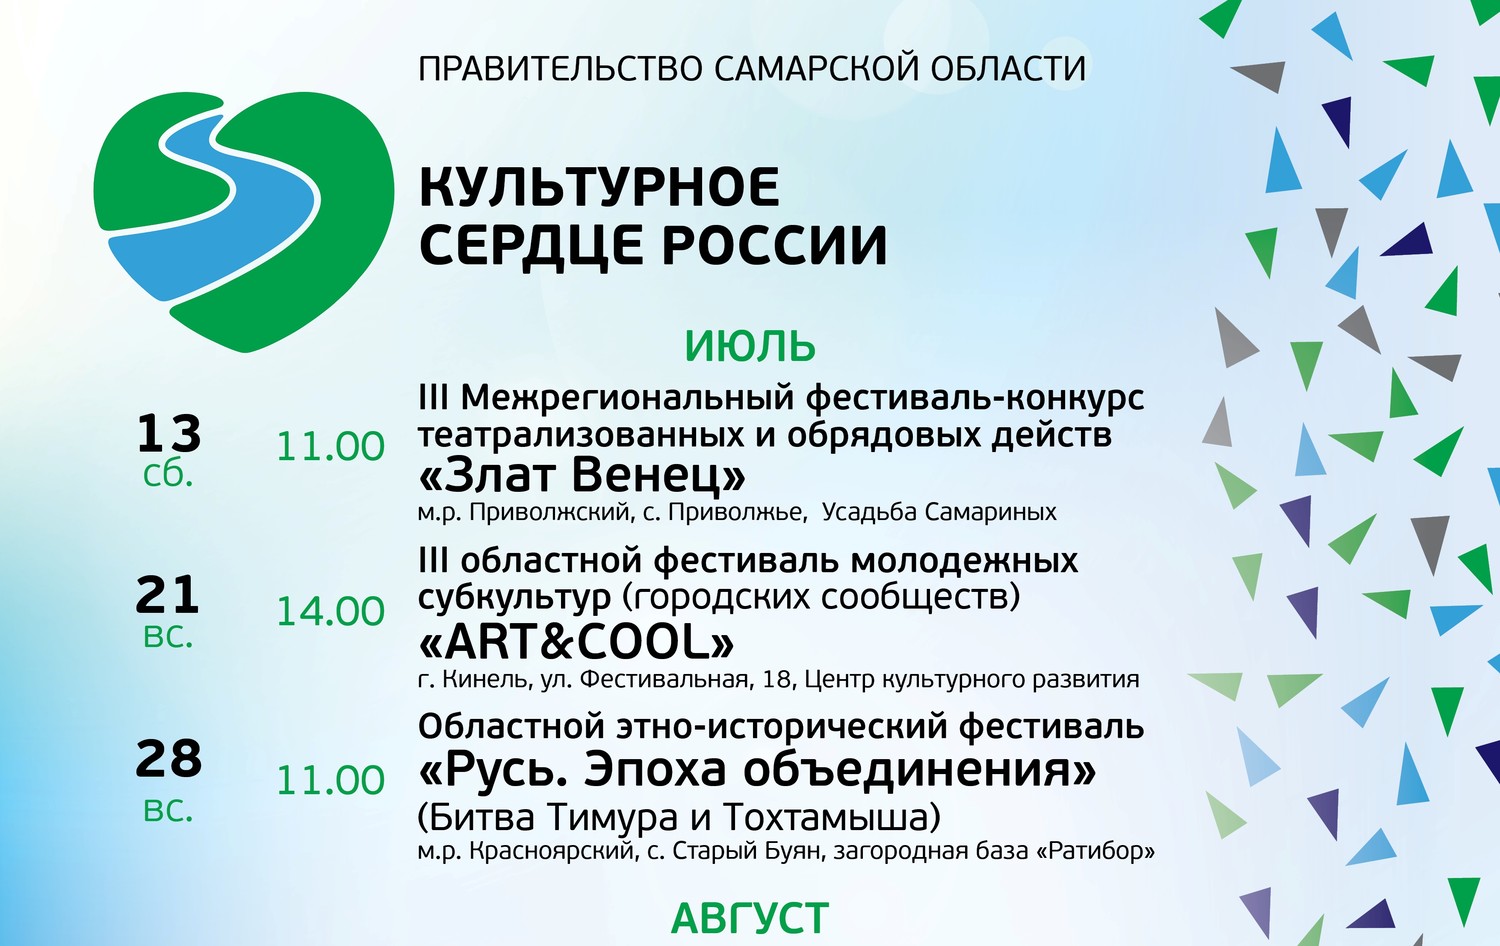 Афиша культурно-досуговых мероприятий в рамках проекта «Культурное сердце России»